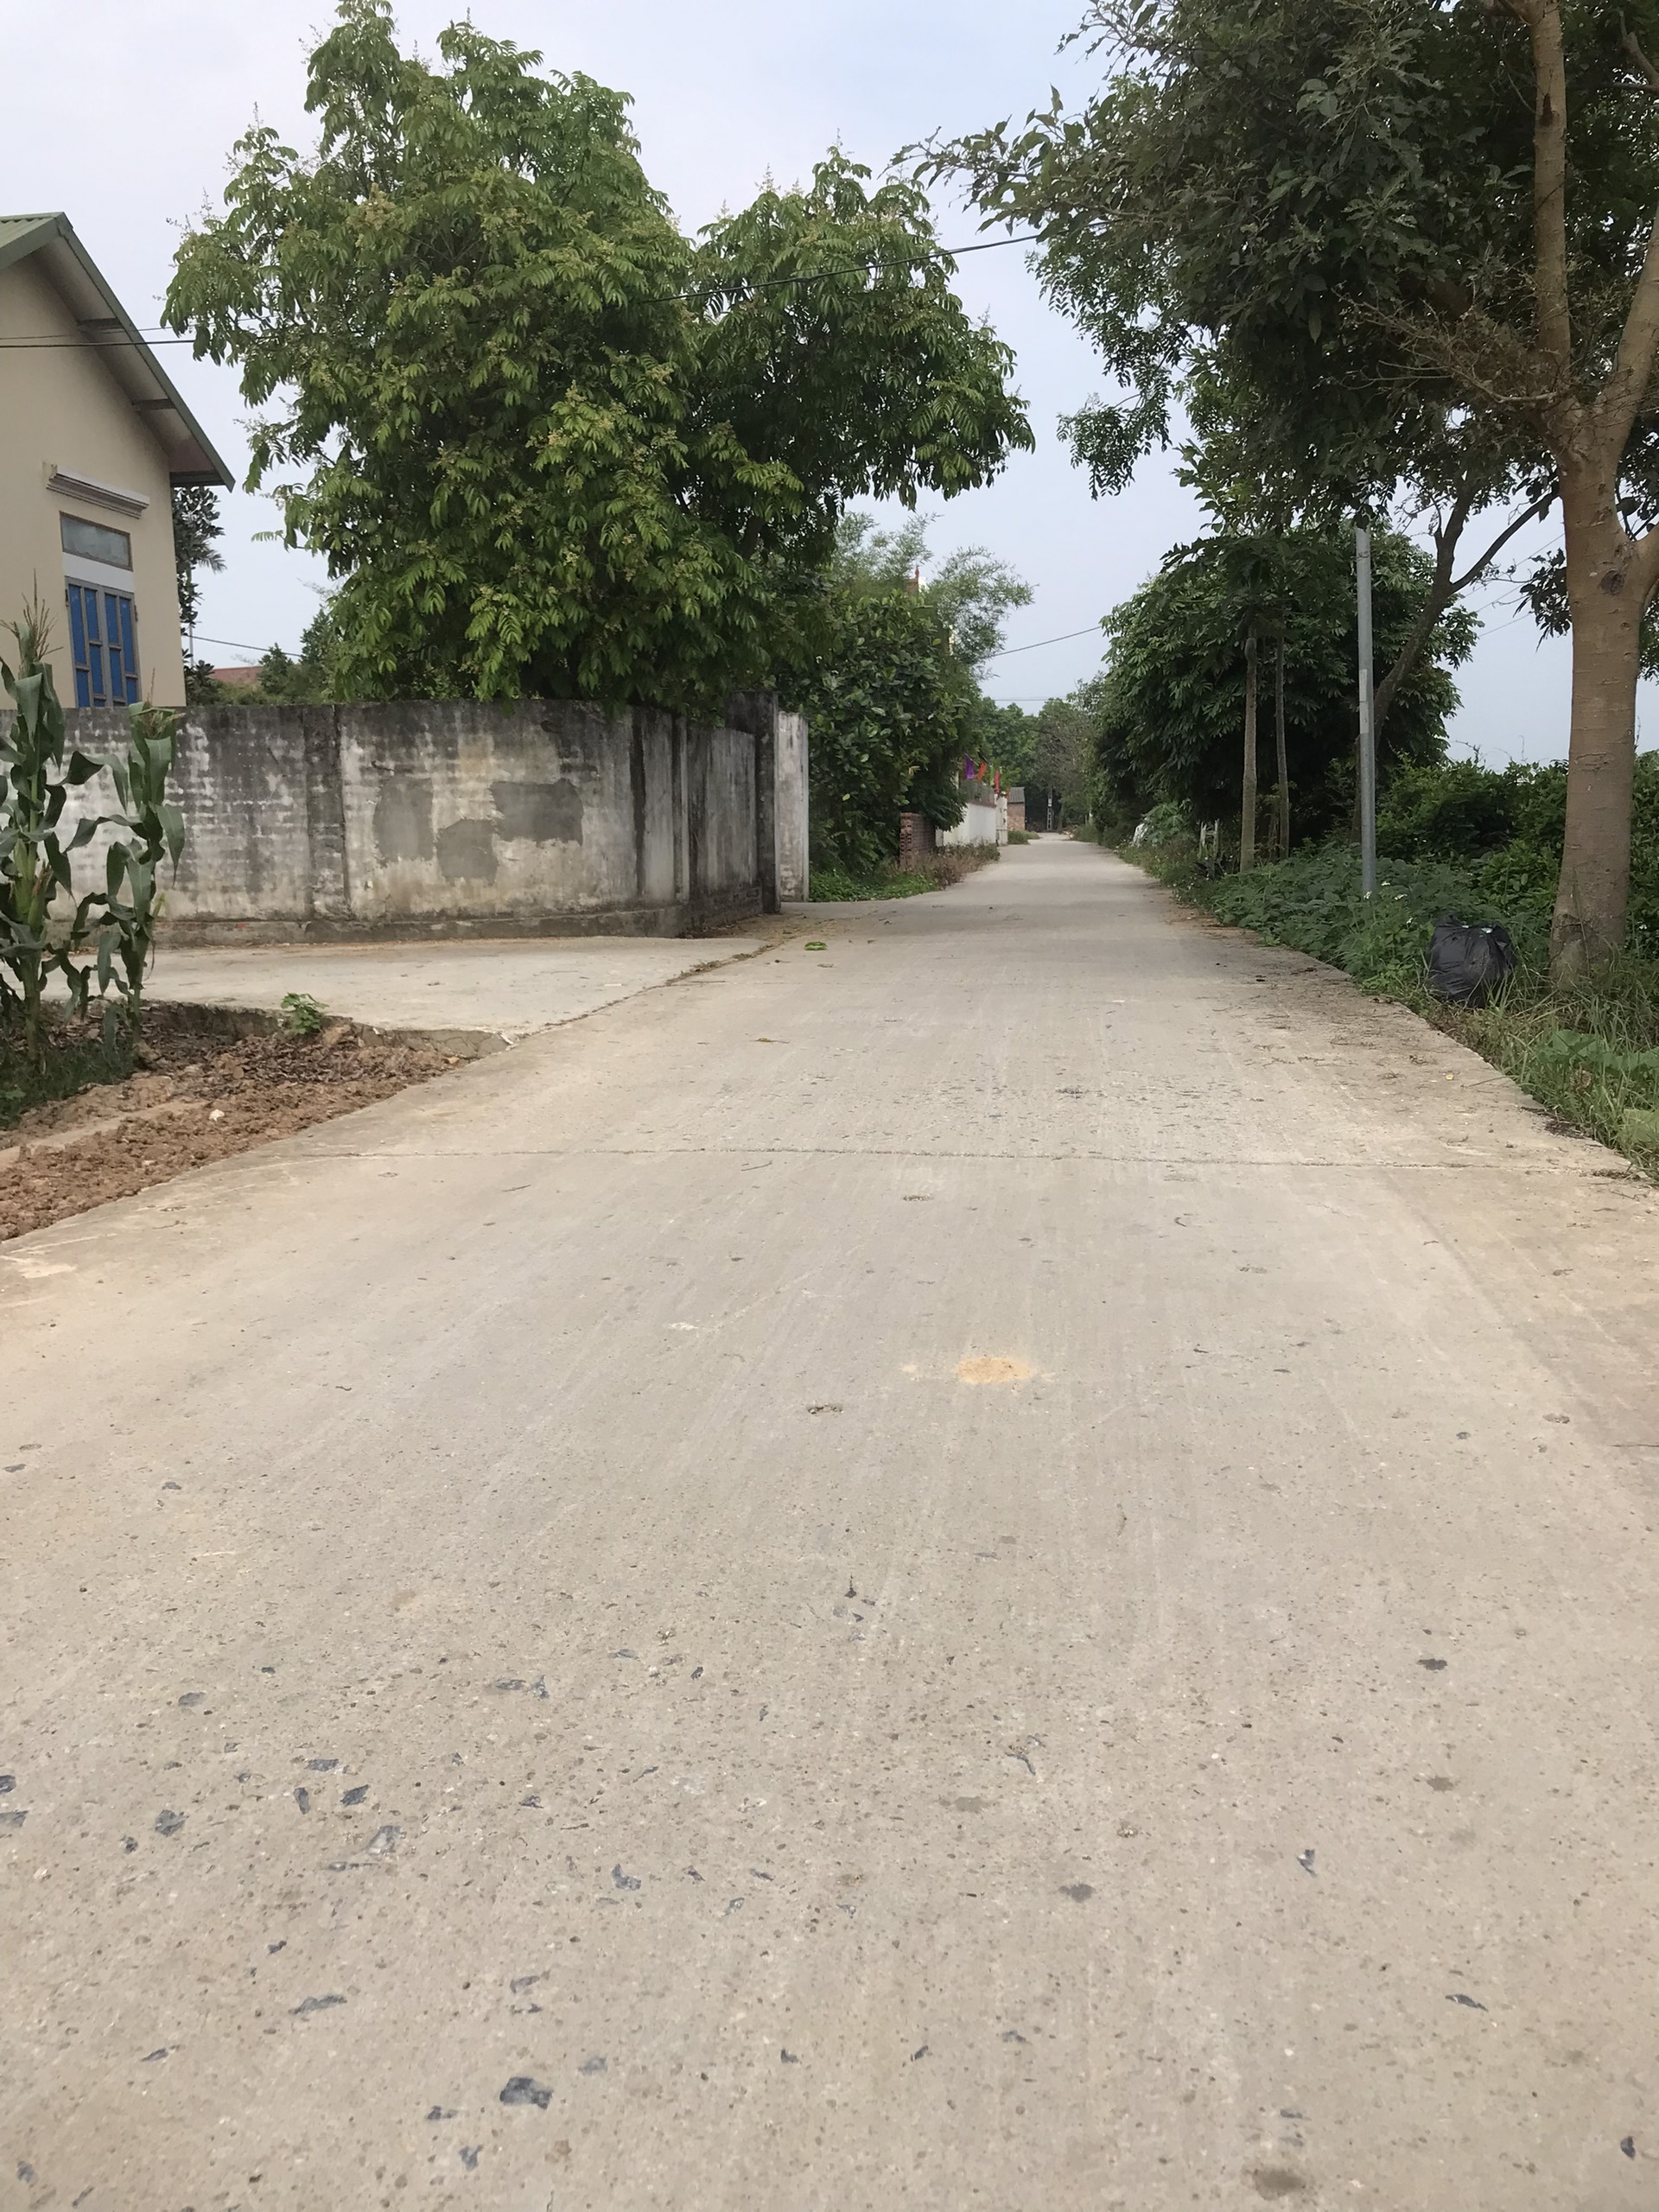 Nhanh tay sở hữu lô đất nền tuyệt đẹp ngay trung tâm KCN Gia Bình – Lương Tài, Bắc Ninh 1